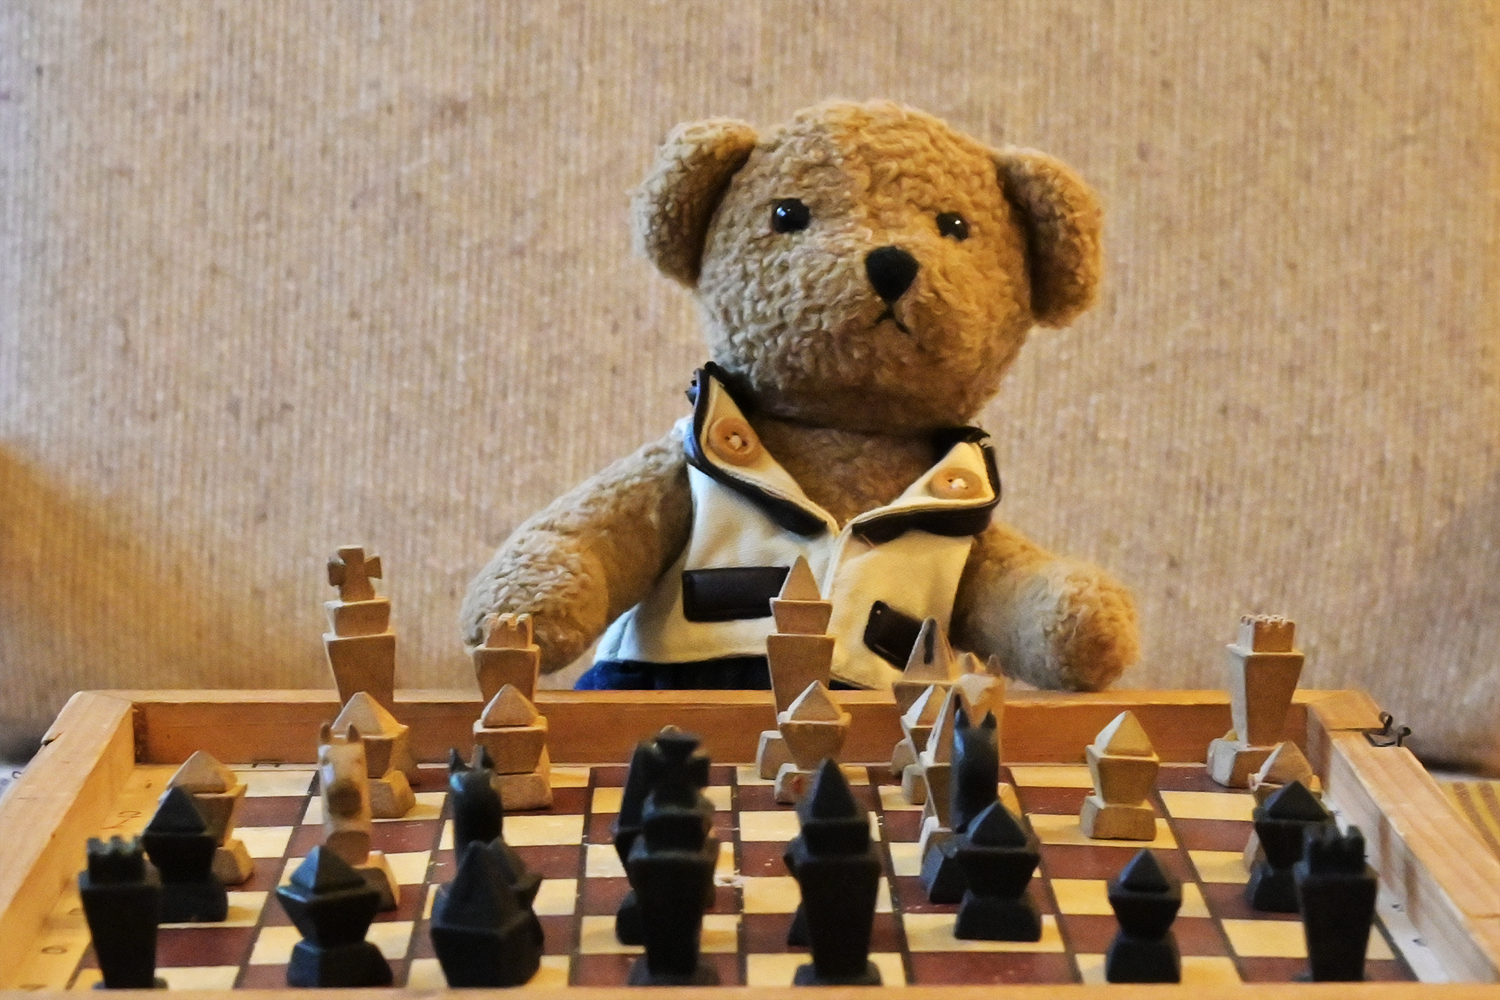 Ludwig spielt Schach - Louis joue aux échecs. 